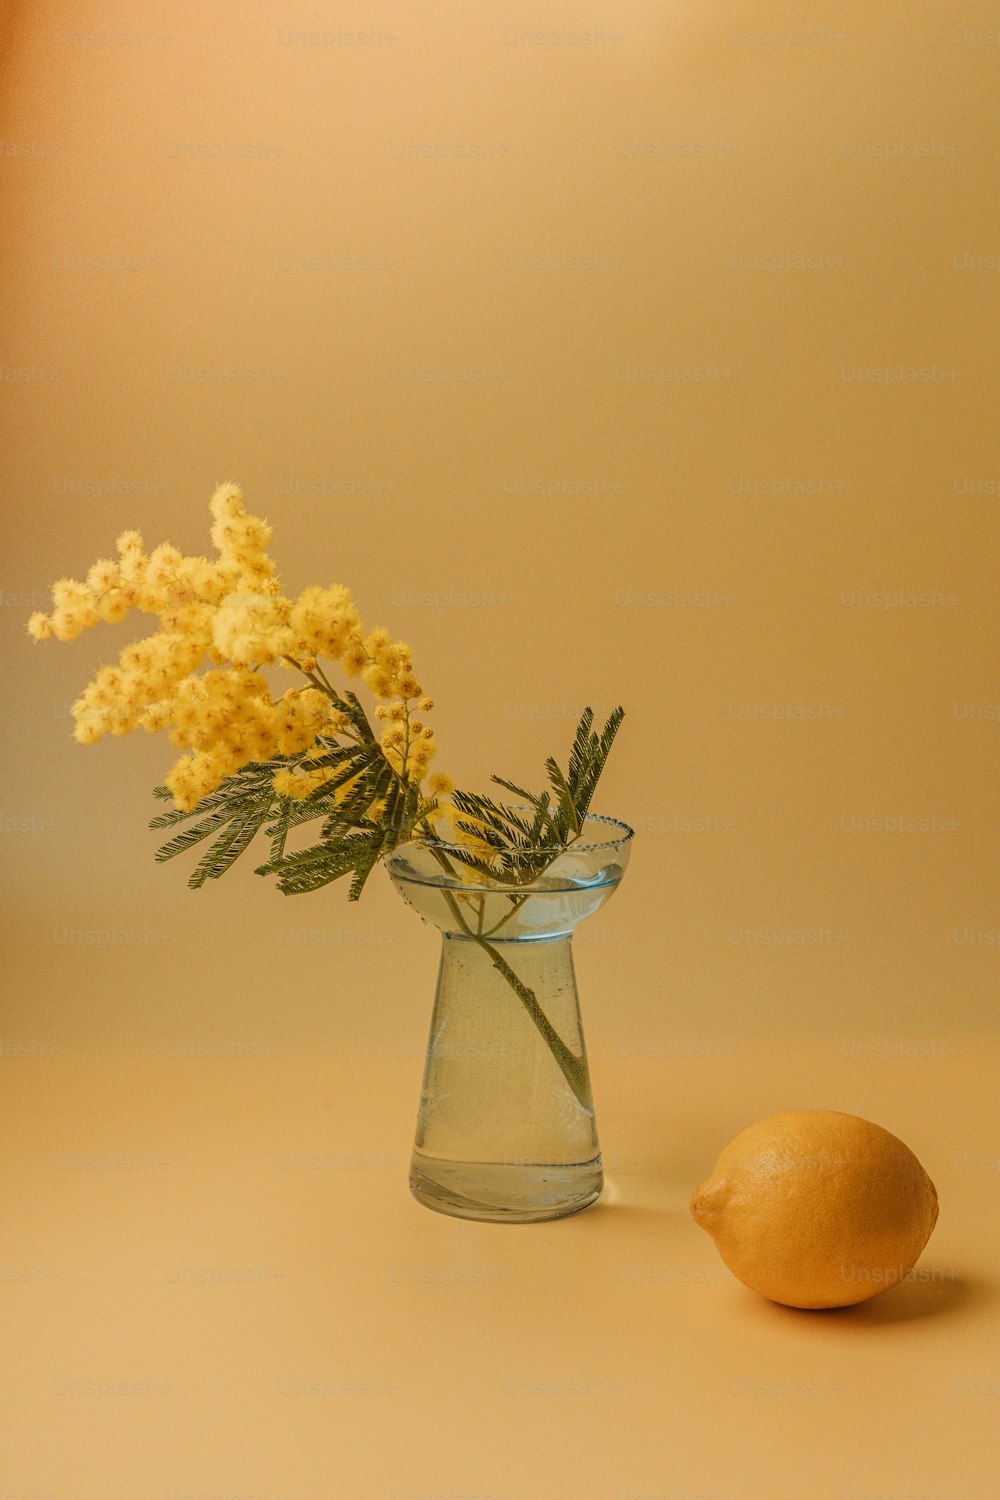 レモンの隣のガラスの花瓶の黄色い花